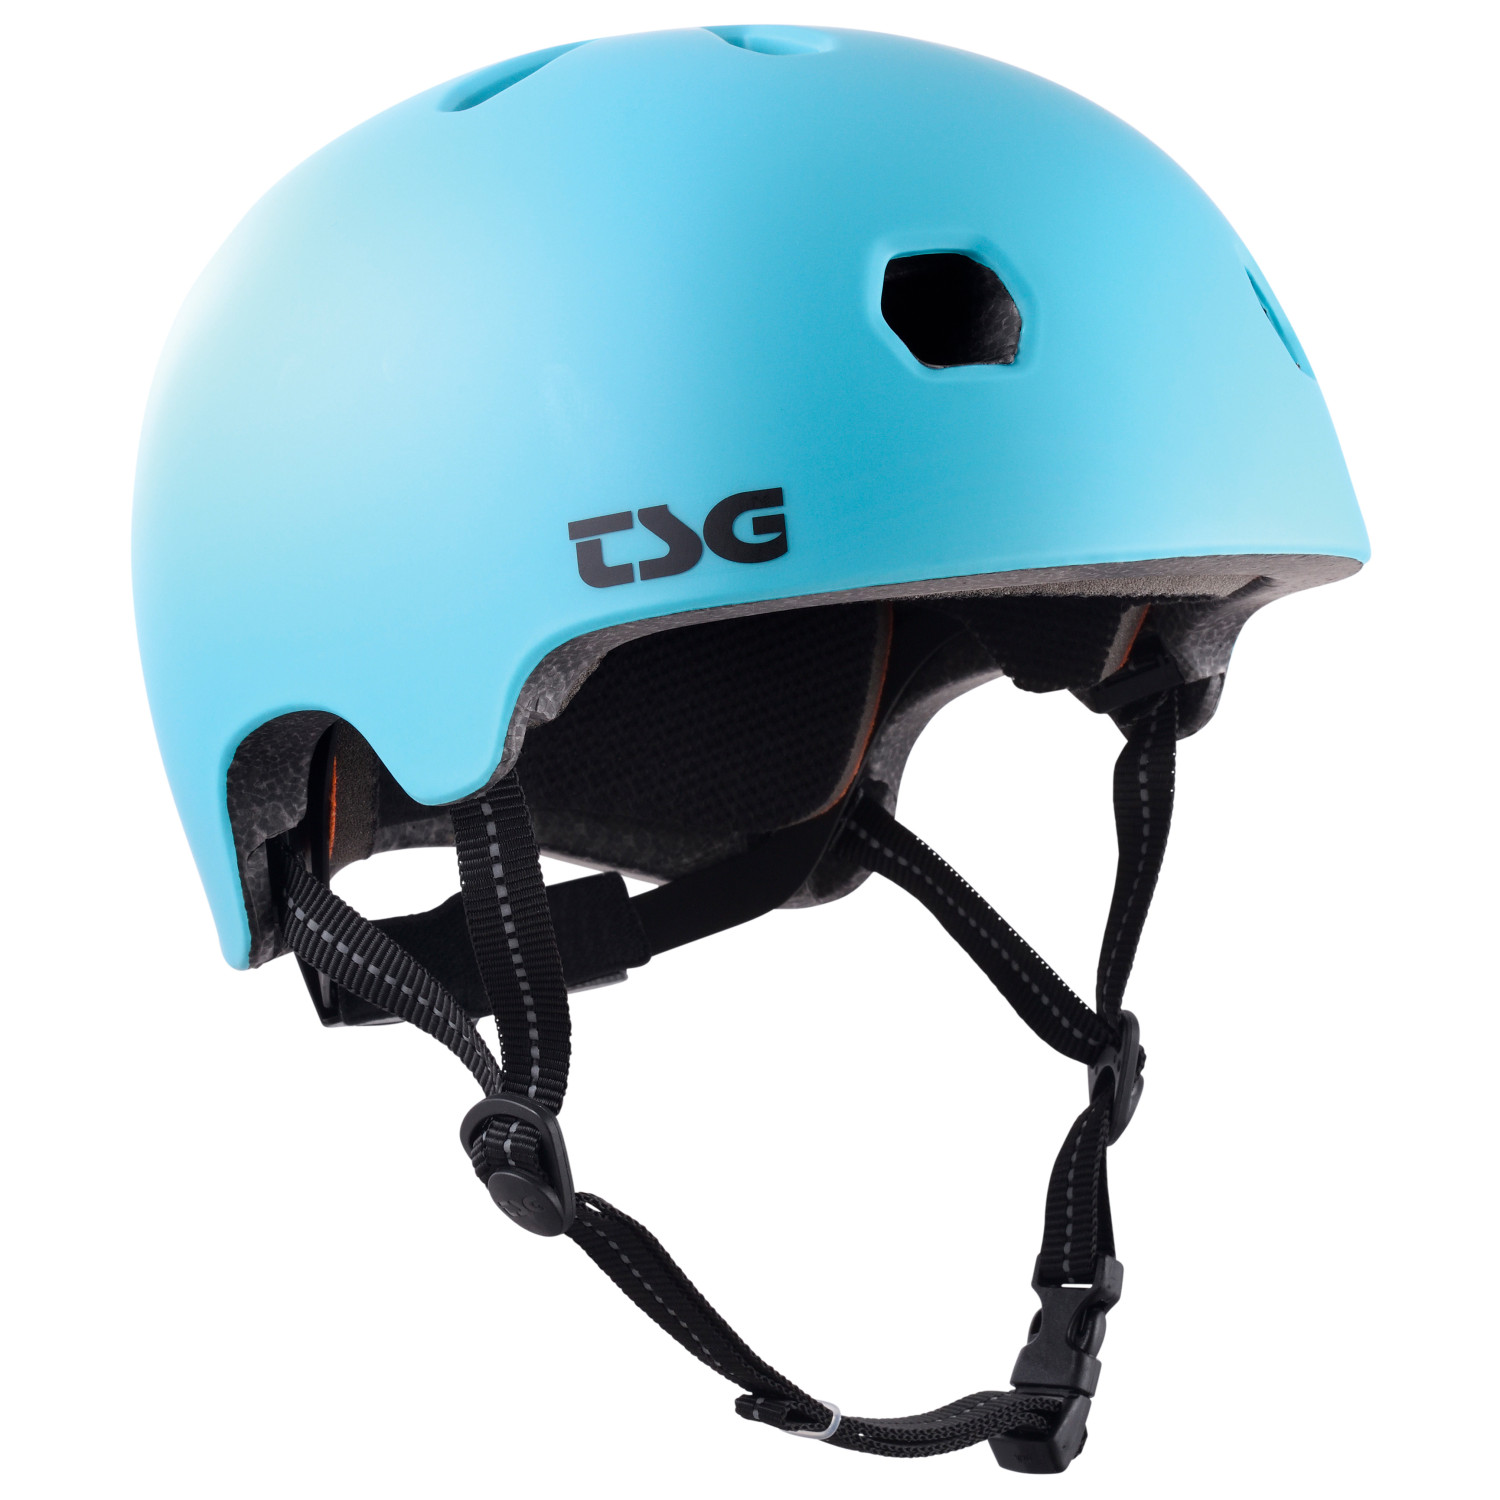 цена Велосипедный шлем Tsg Kid's Meta Solid Color, цвет Satin Light Ocean